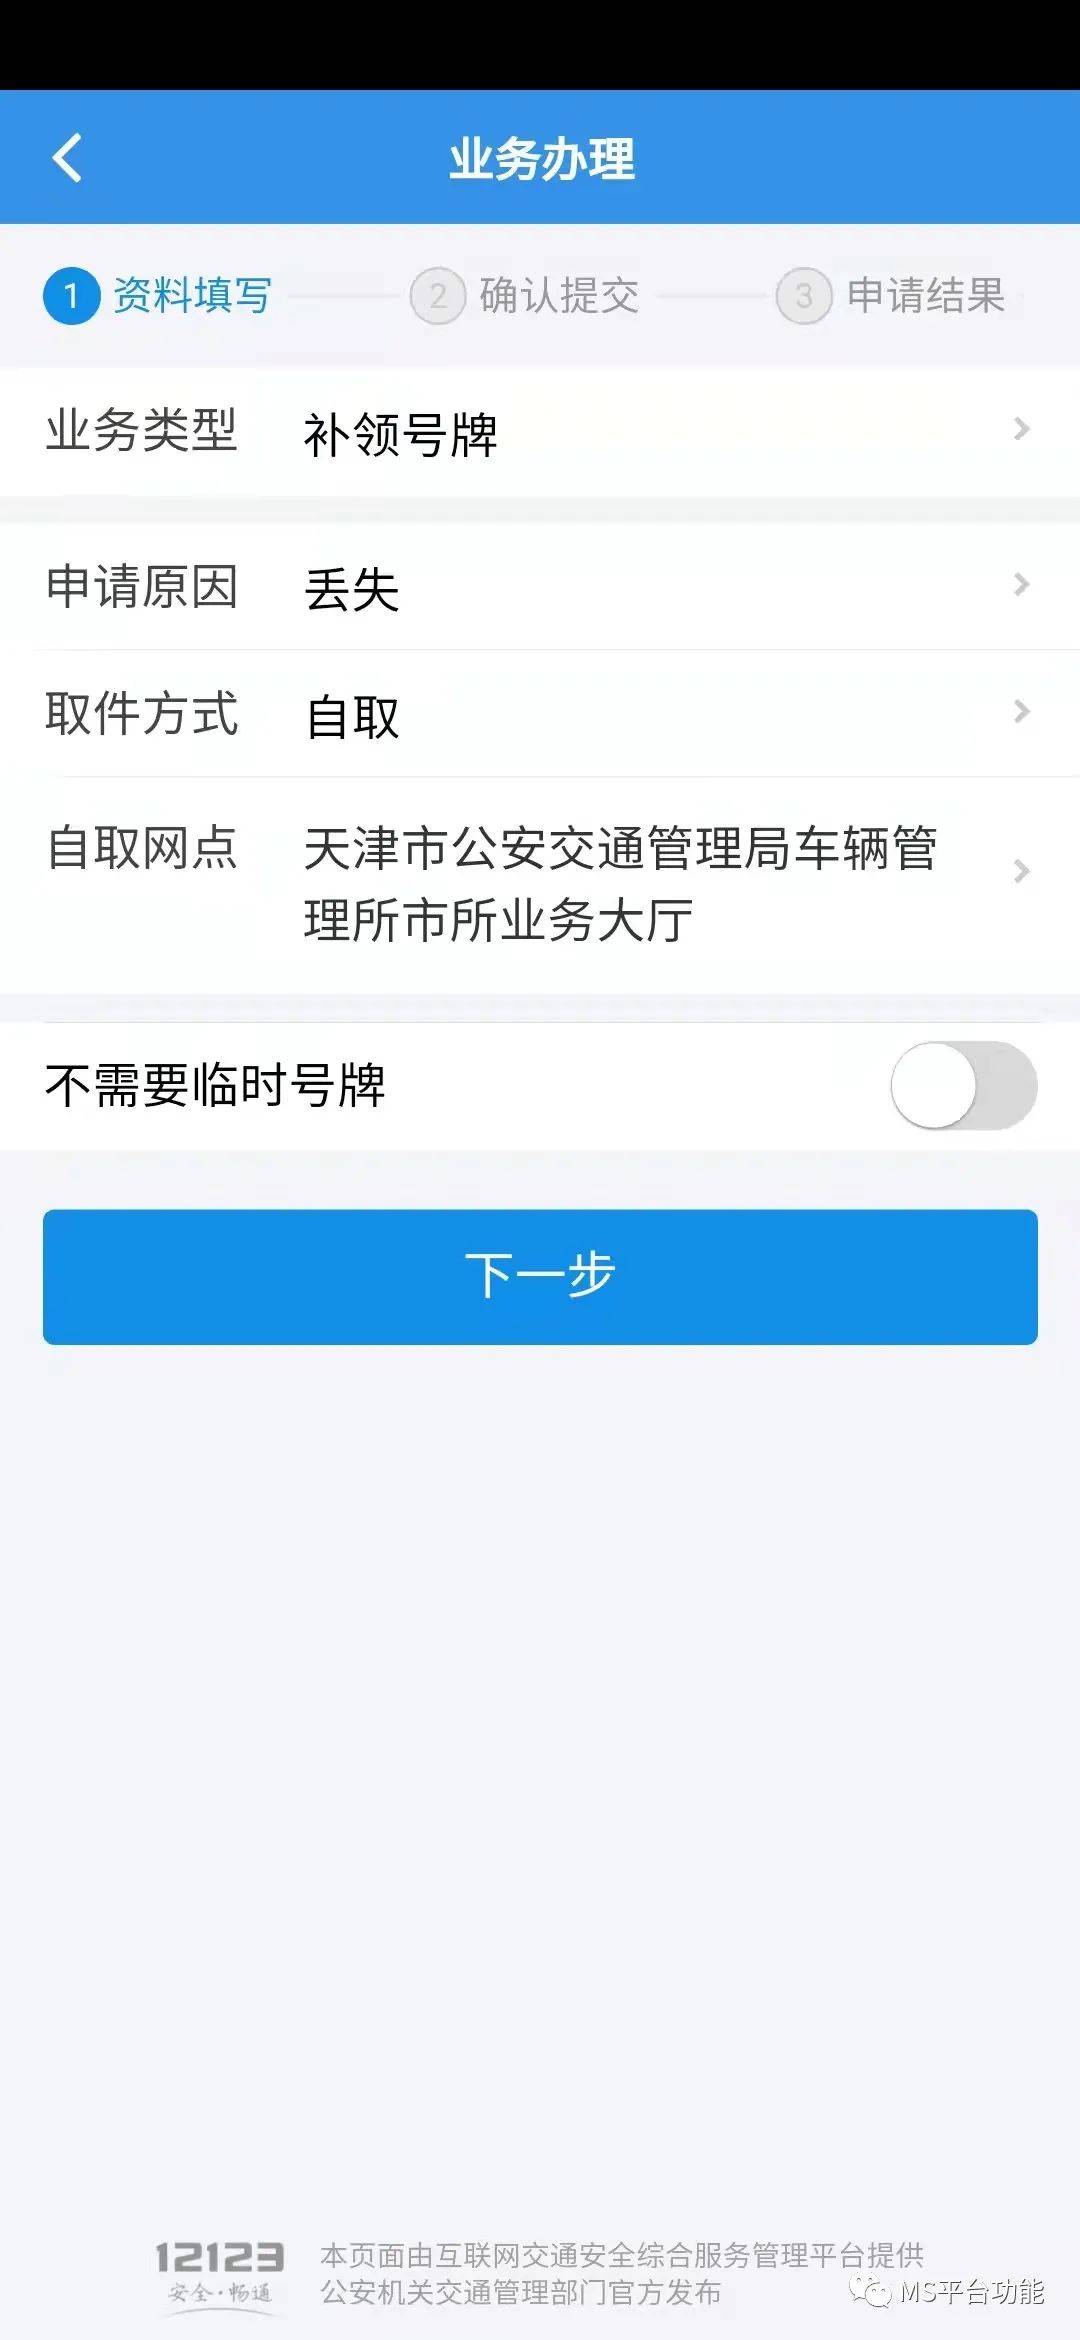 同时,还可通过天津公安app,交管12123手机app和天津市公安交通管理